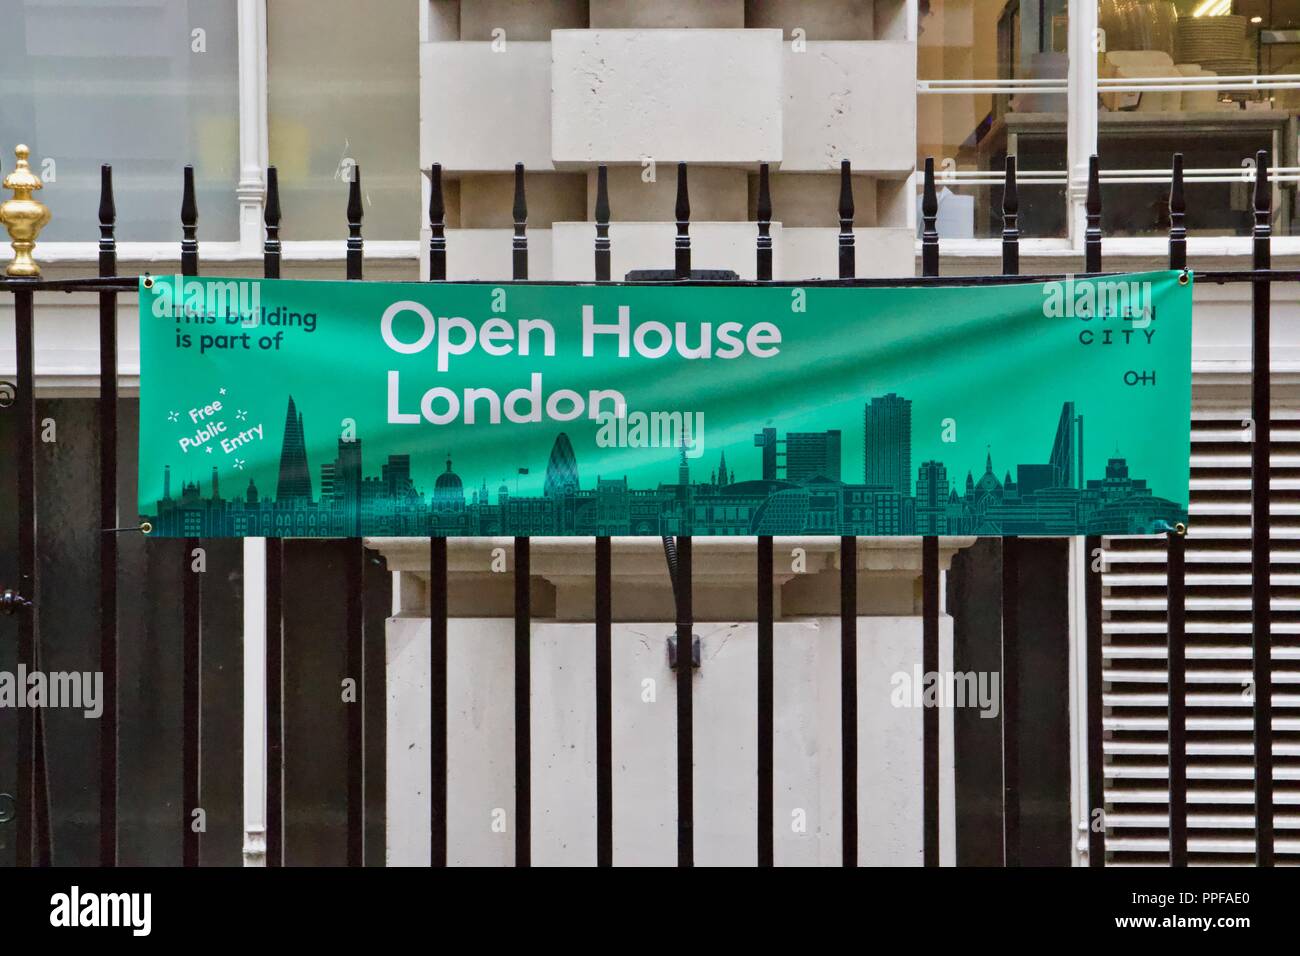 Un bandeau noir vert attaché à balustrades pour Open House London 2018, qui propose un parking public accès à plus de 800 bâtiments pour 1 week-end Banque D'Images